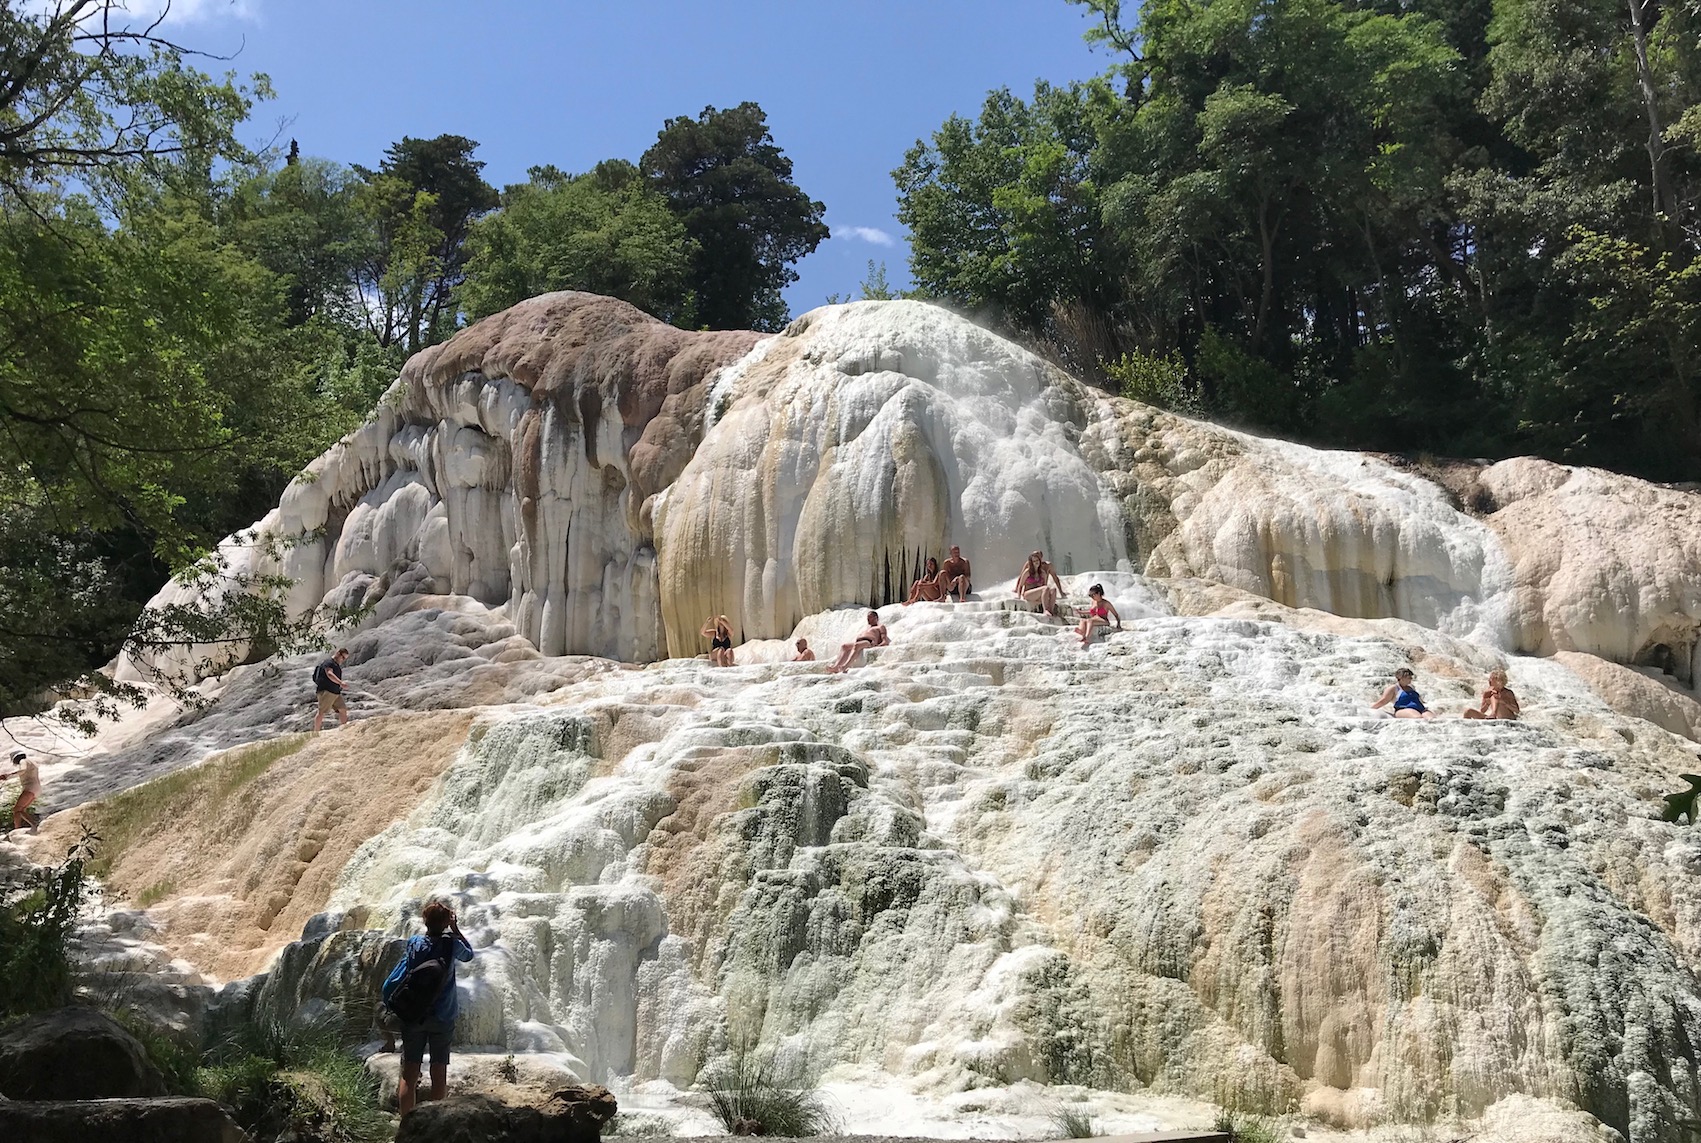 Bagni San Filippo thermal springs in Tuscany